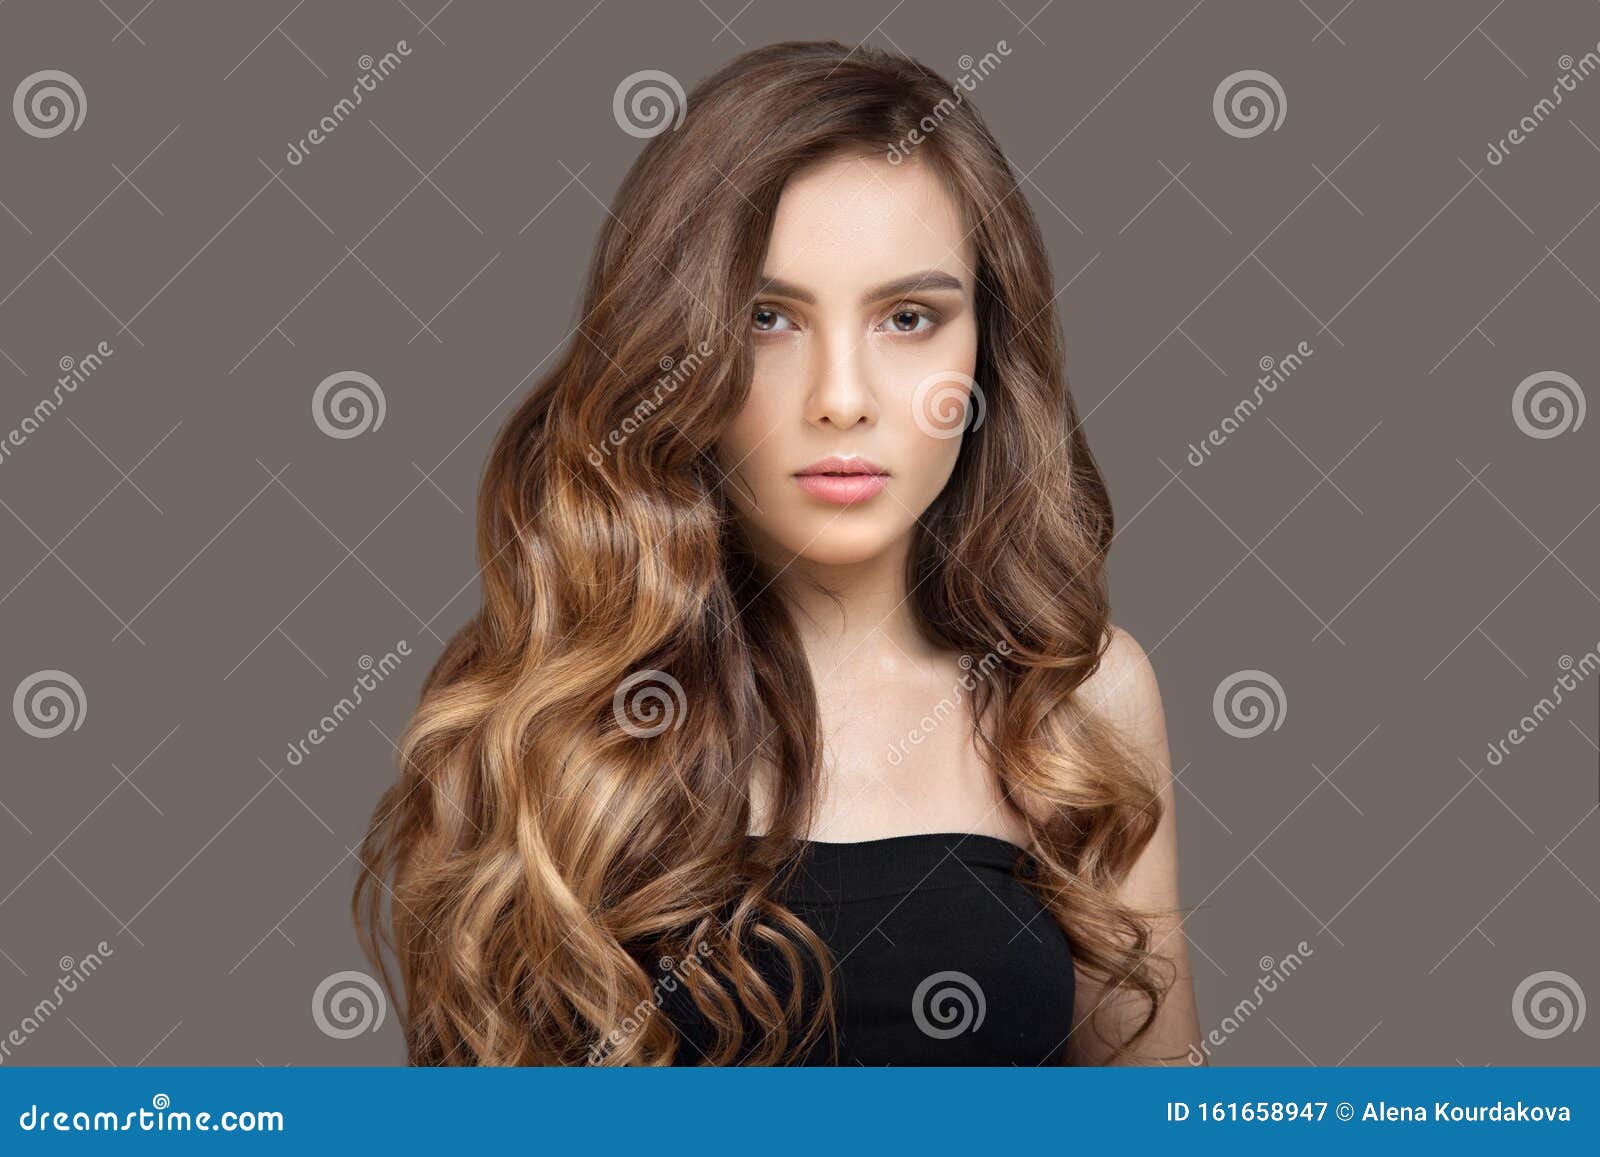 voor Vergoeding zitten Portret Van Een Mooie Jonge Bruine Vrouw Met Lang Golvend Haar Shiny Thick  Hair Stock Afbeelding - Image of zorg, manier: 161658947